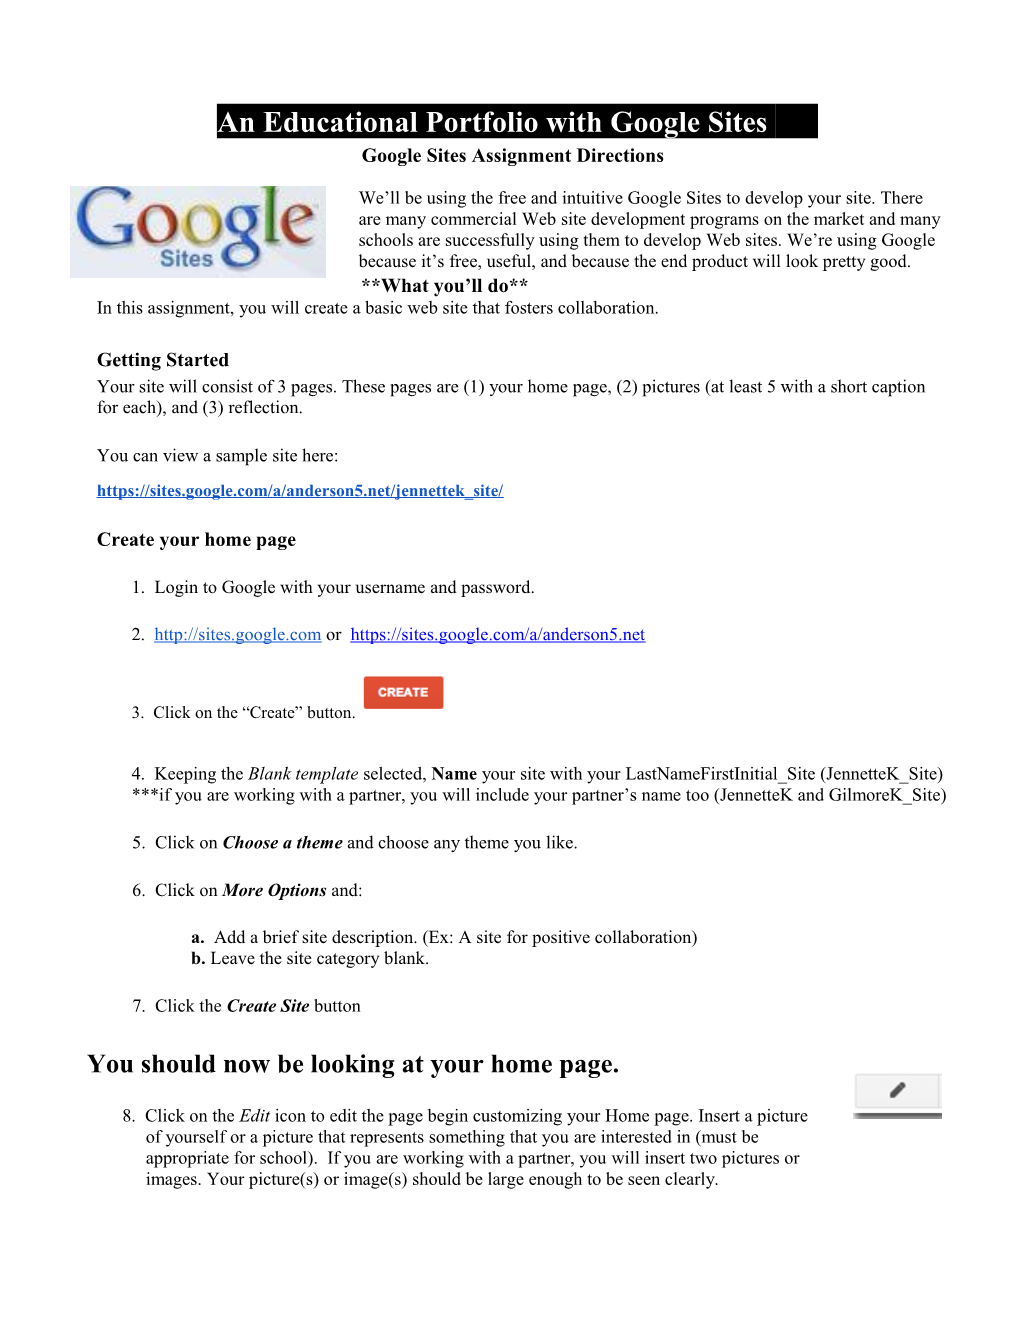 Jennette Google Site Student Handout